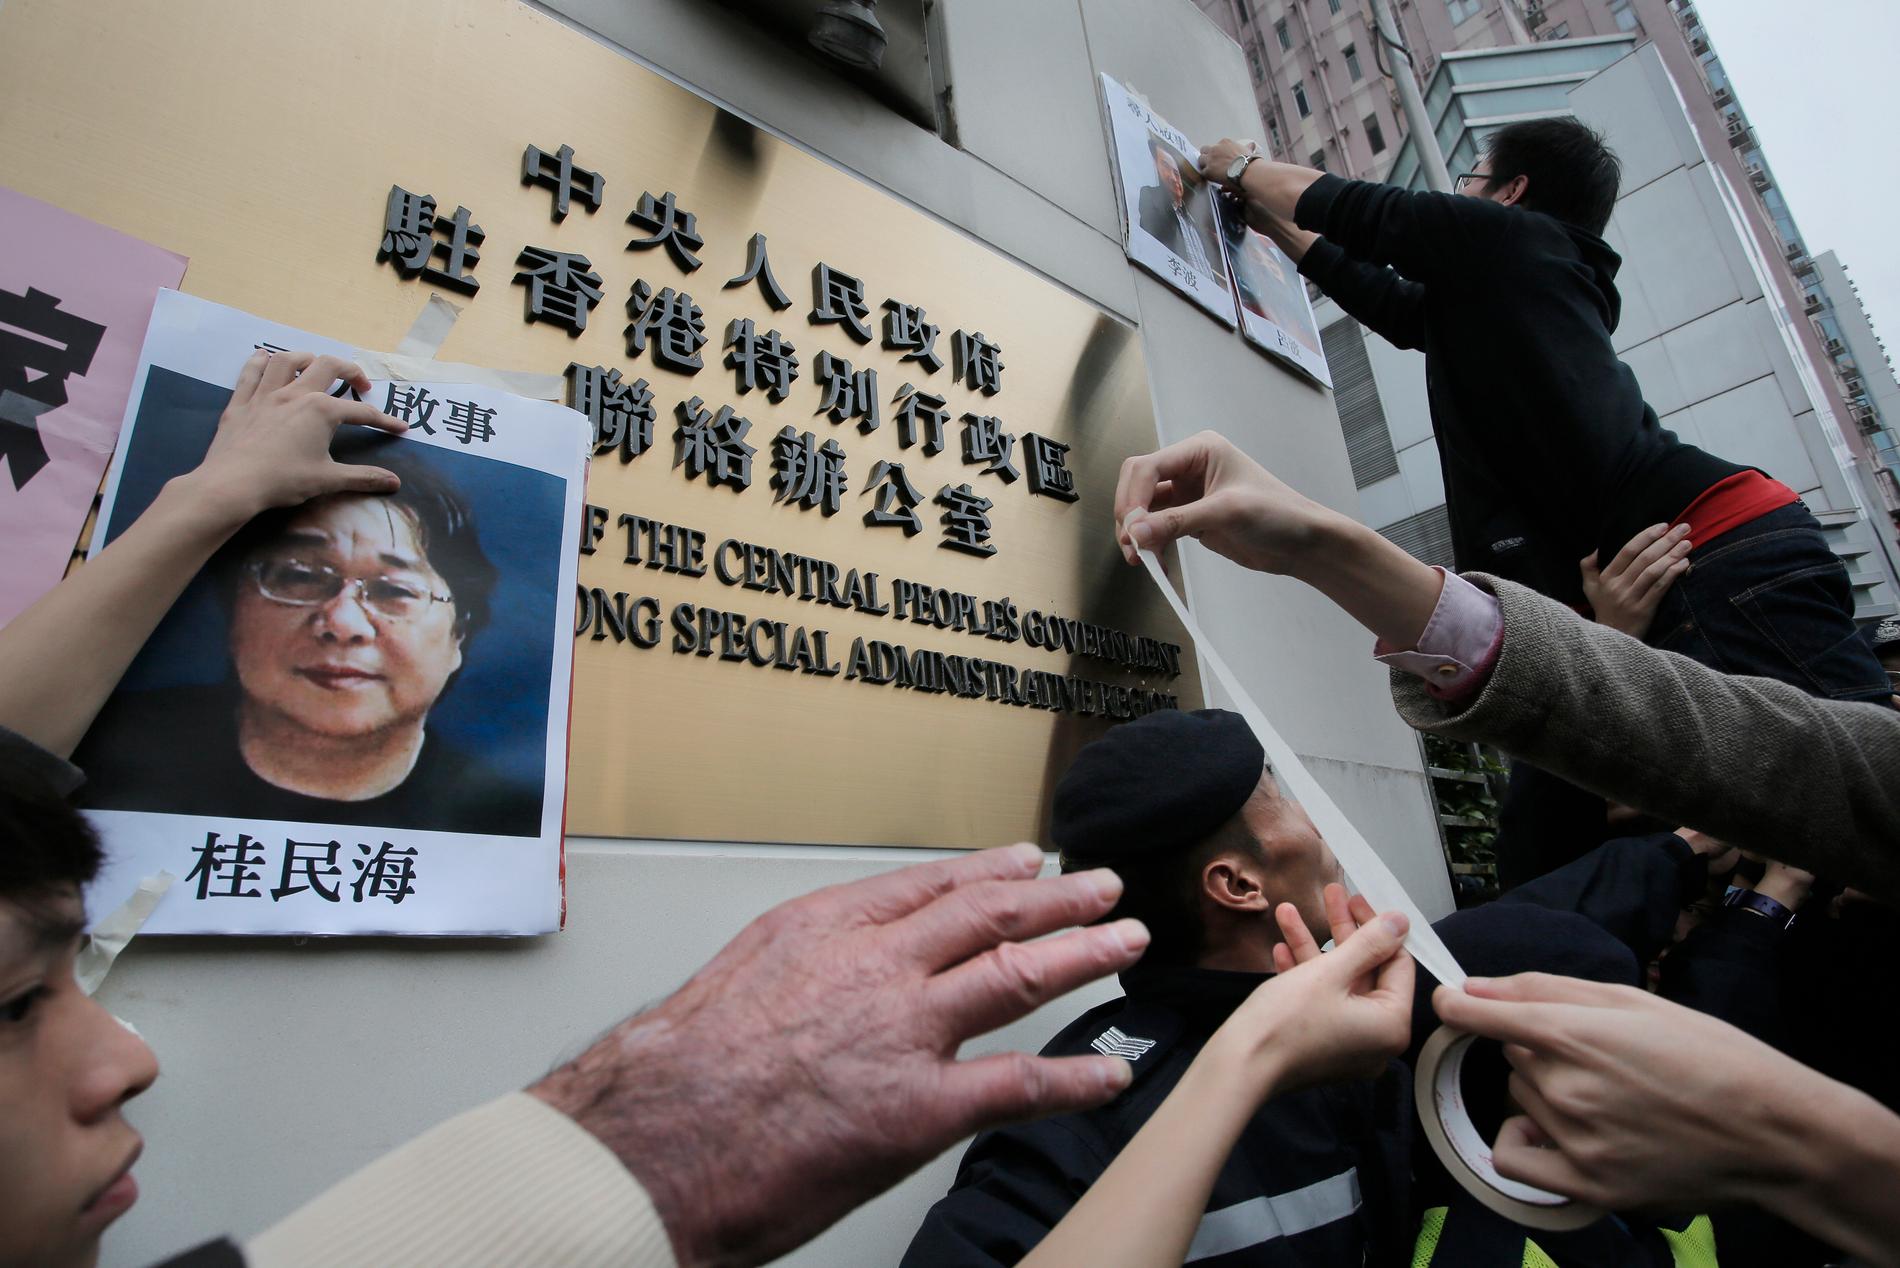 En bild på den av Kina fängslade förläggaren Gui Minhai sätts upp på en vägg i samband med en protestaktion i Hongkong 2016.